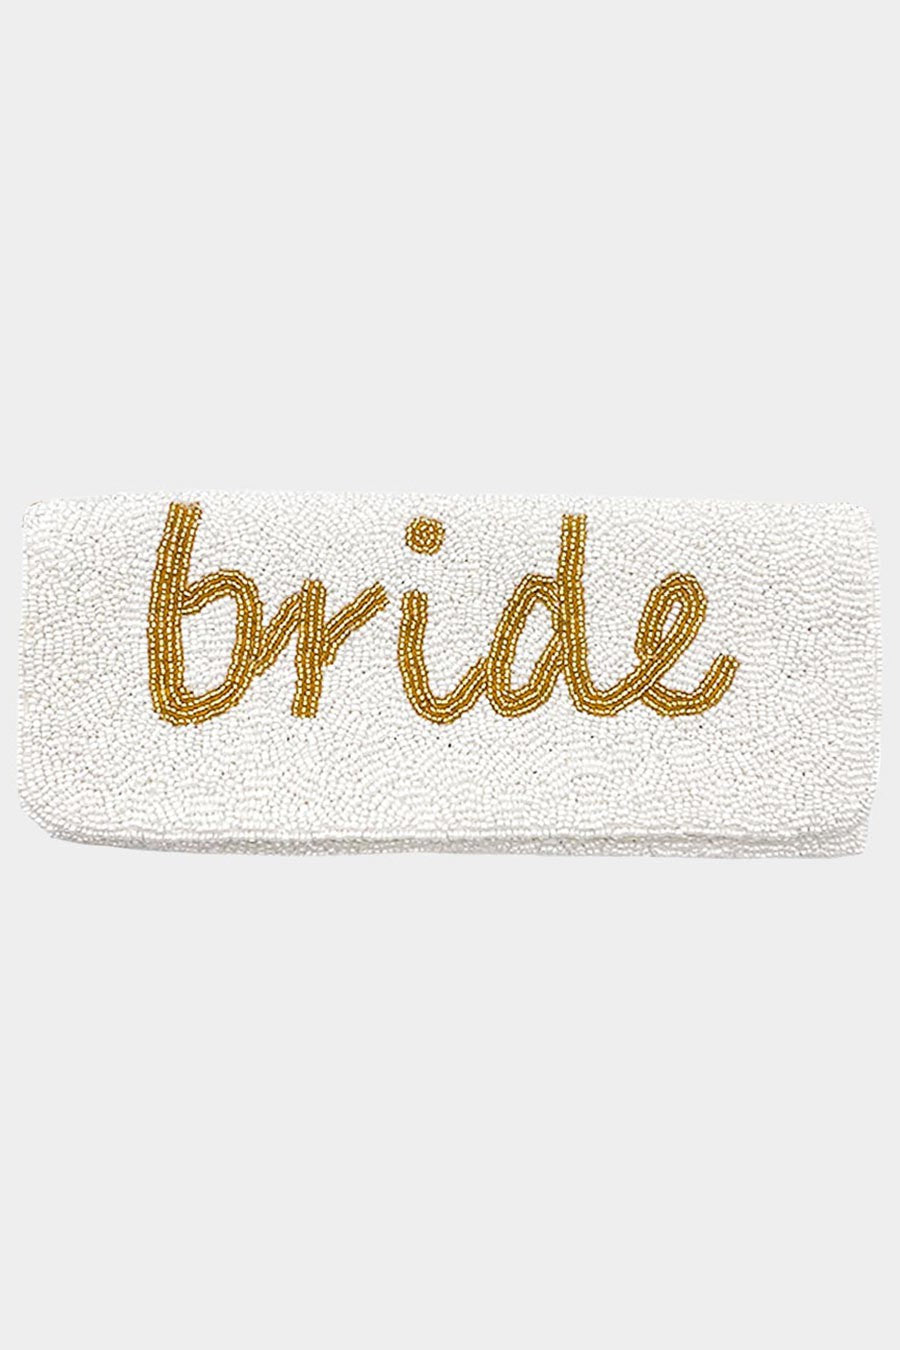 BRIDE Seed Beaded Message Clutch / Shoulder Bag